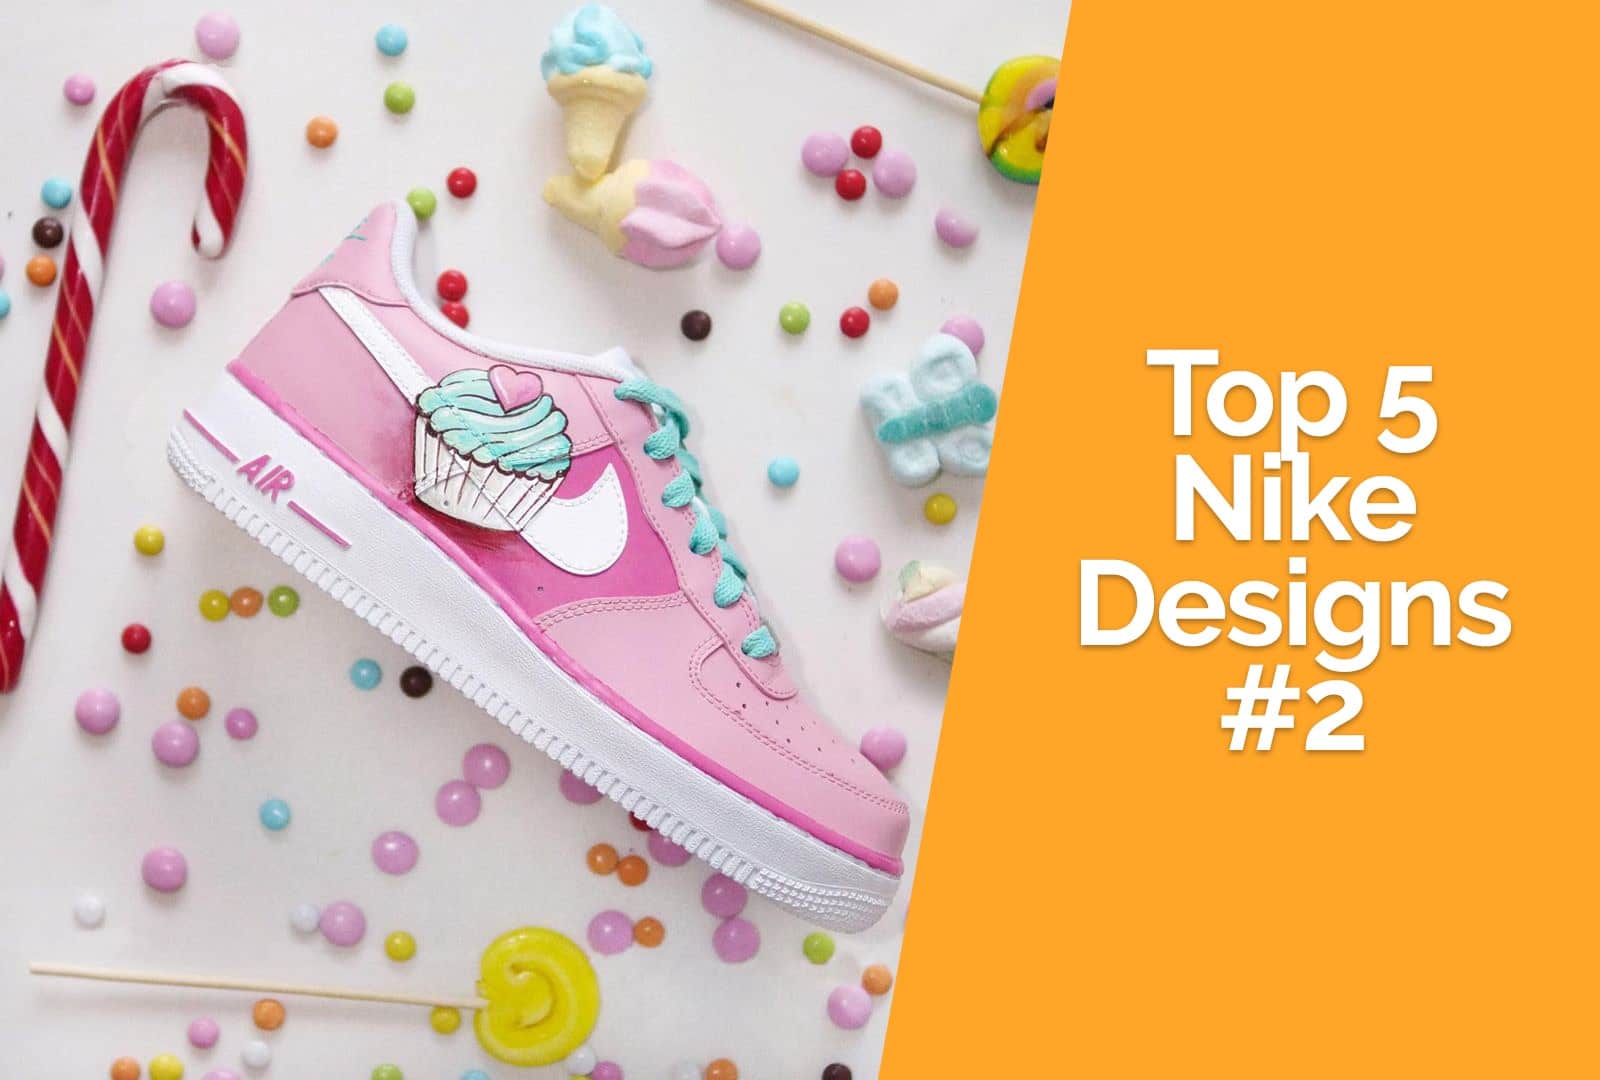 Top 5 Custom Nikes #2